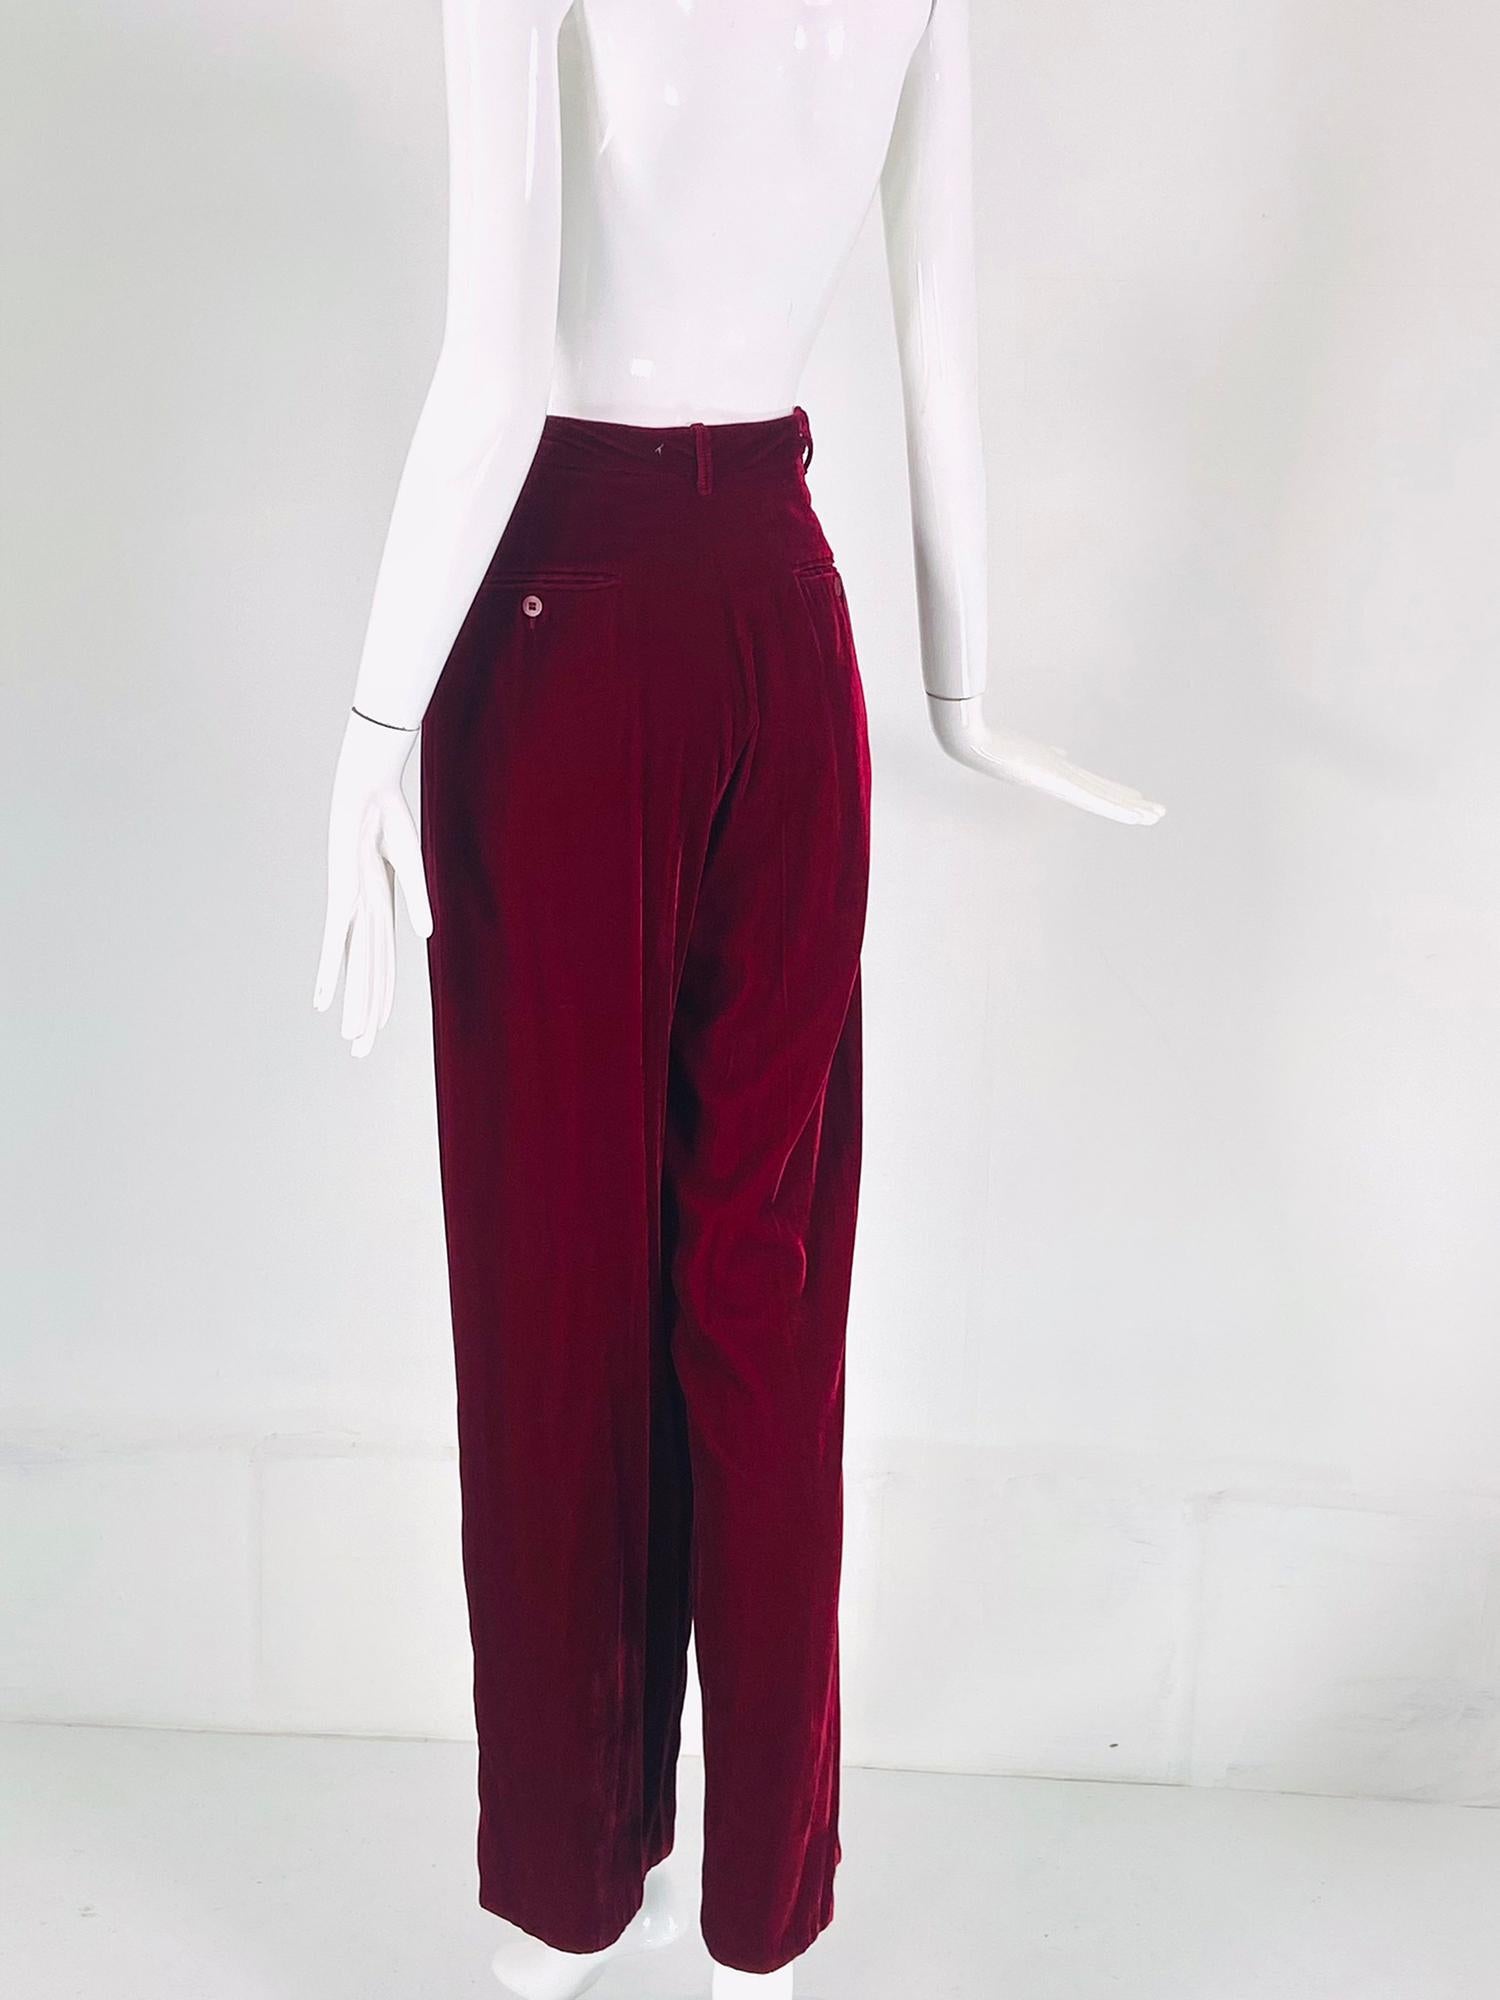 Romeo Gigli S/S 1990 Look 47 RTW Womens Garnet Velvet Button Fly Trouser 40 For Sale 1